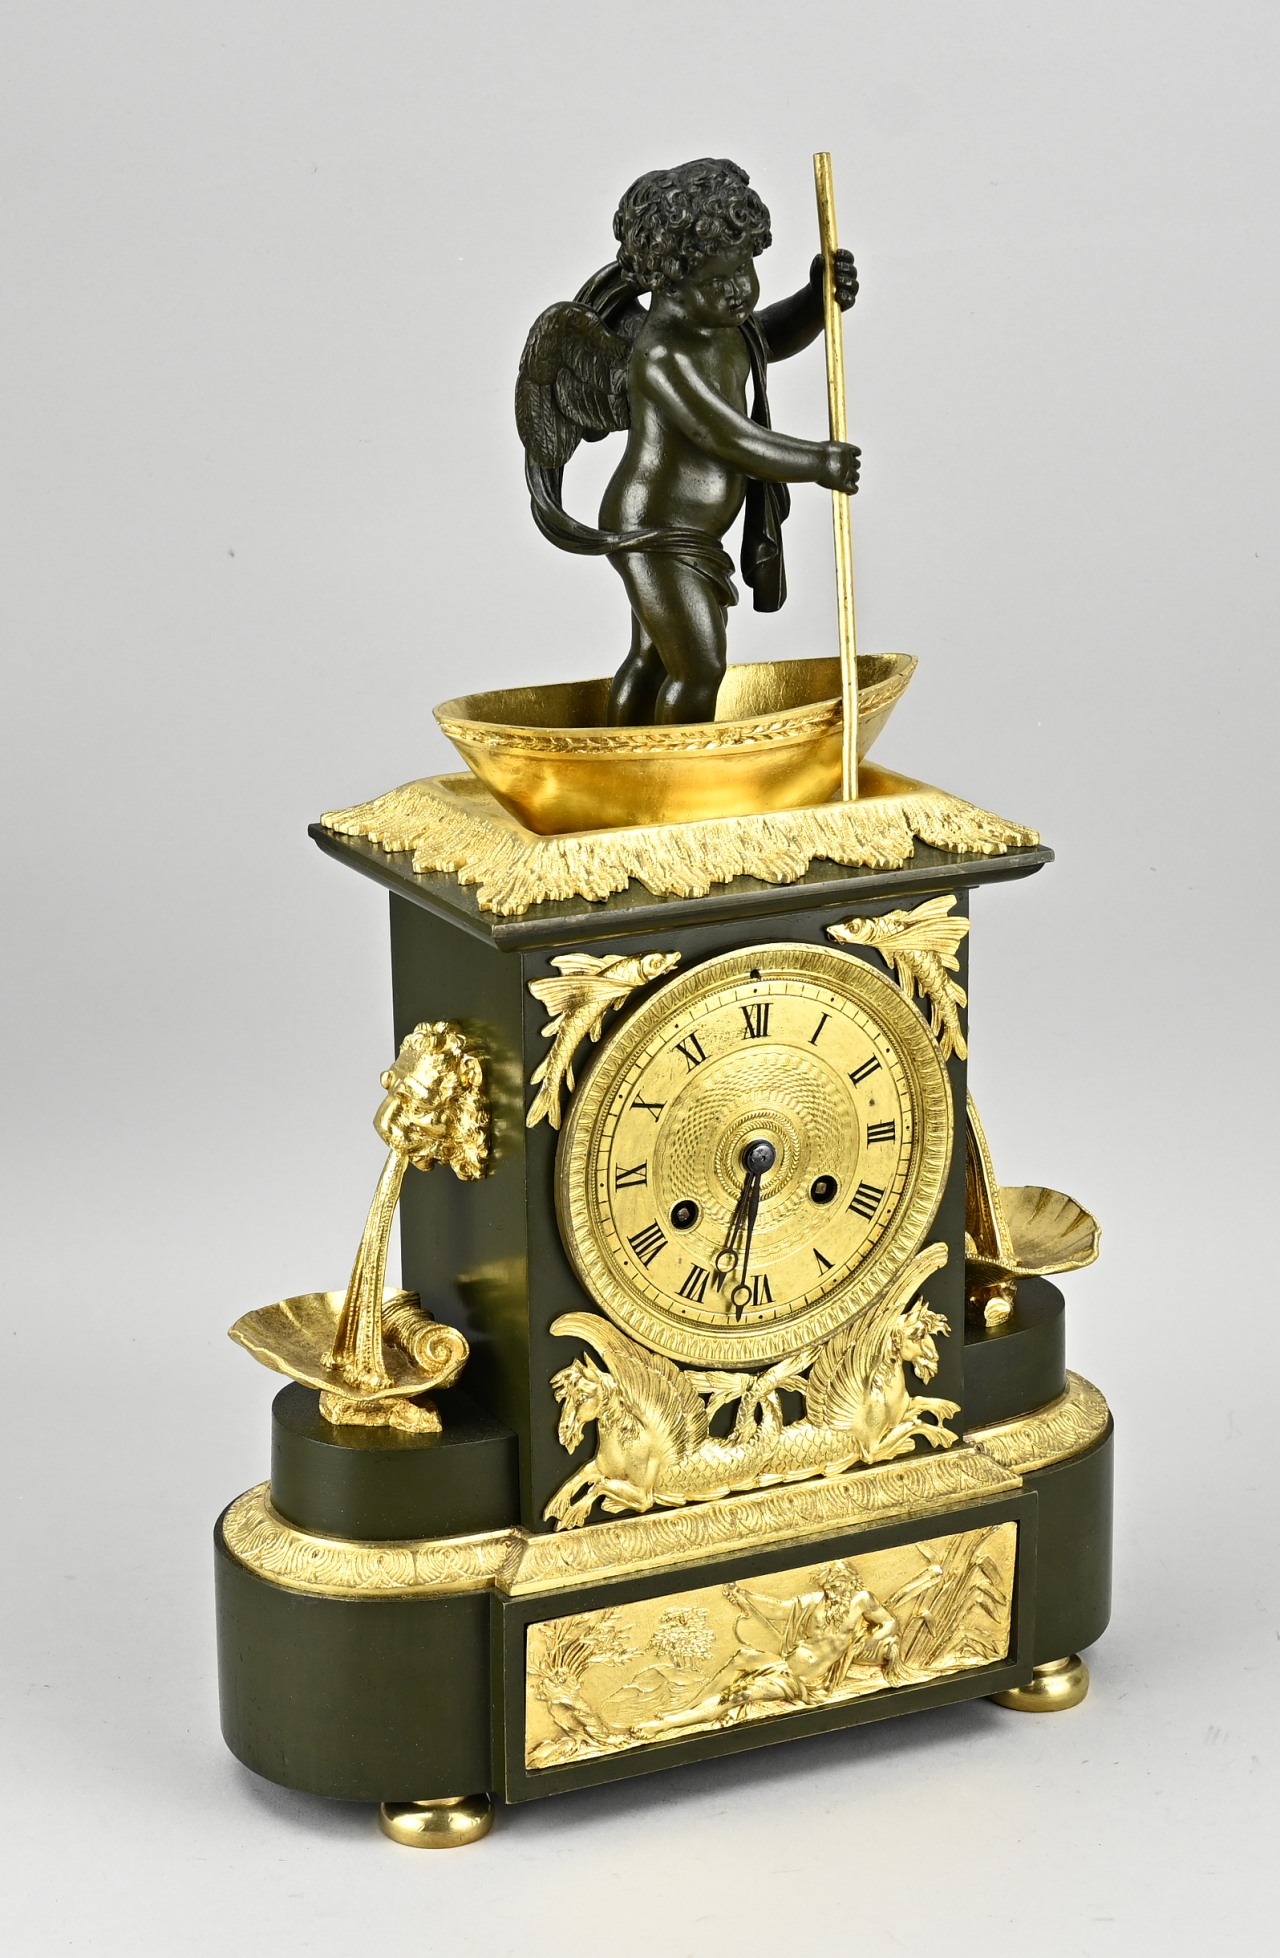 Antique directoire mantel clock - Image 2 of 2